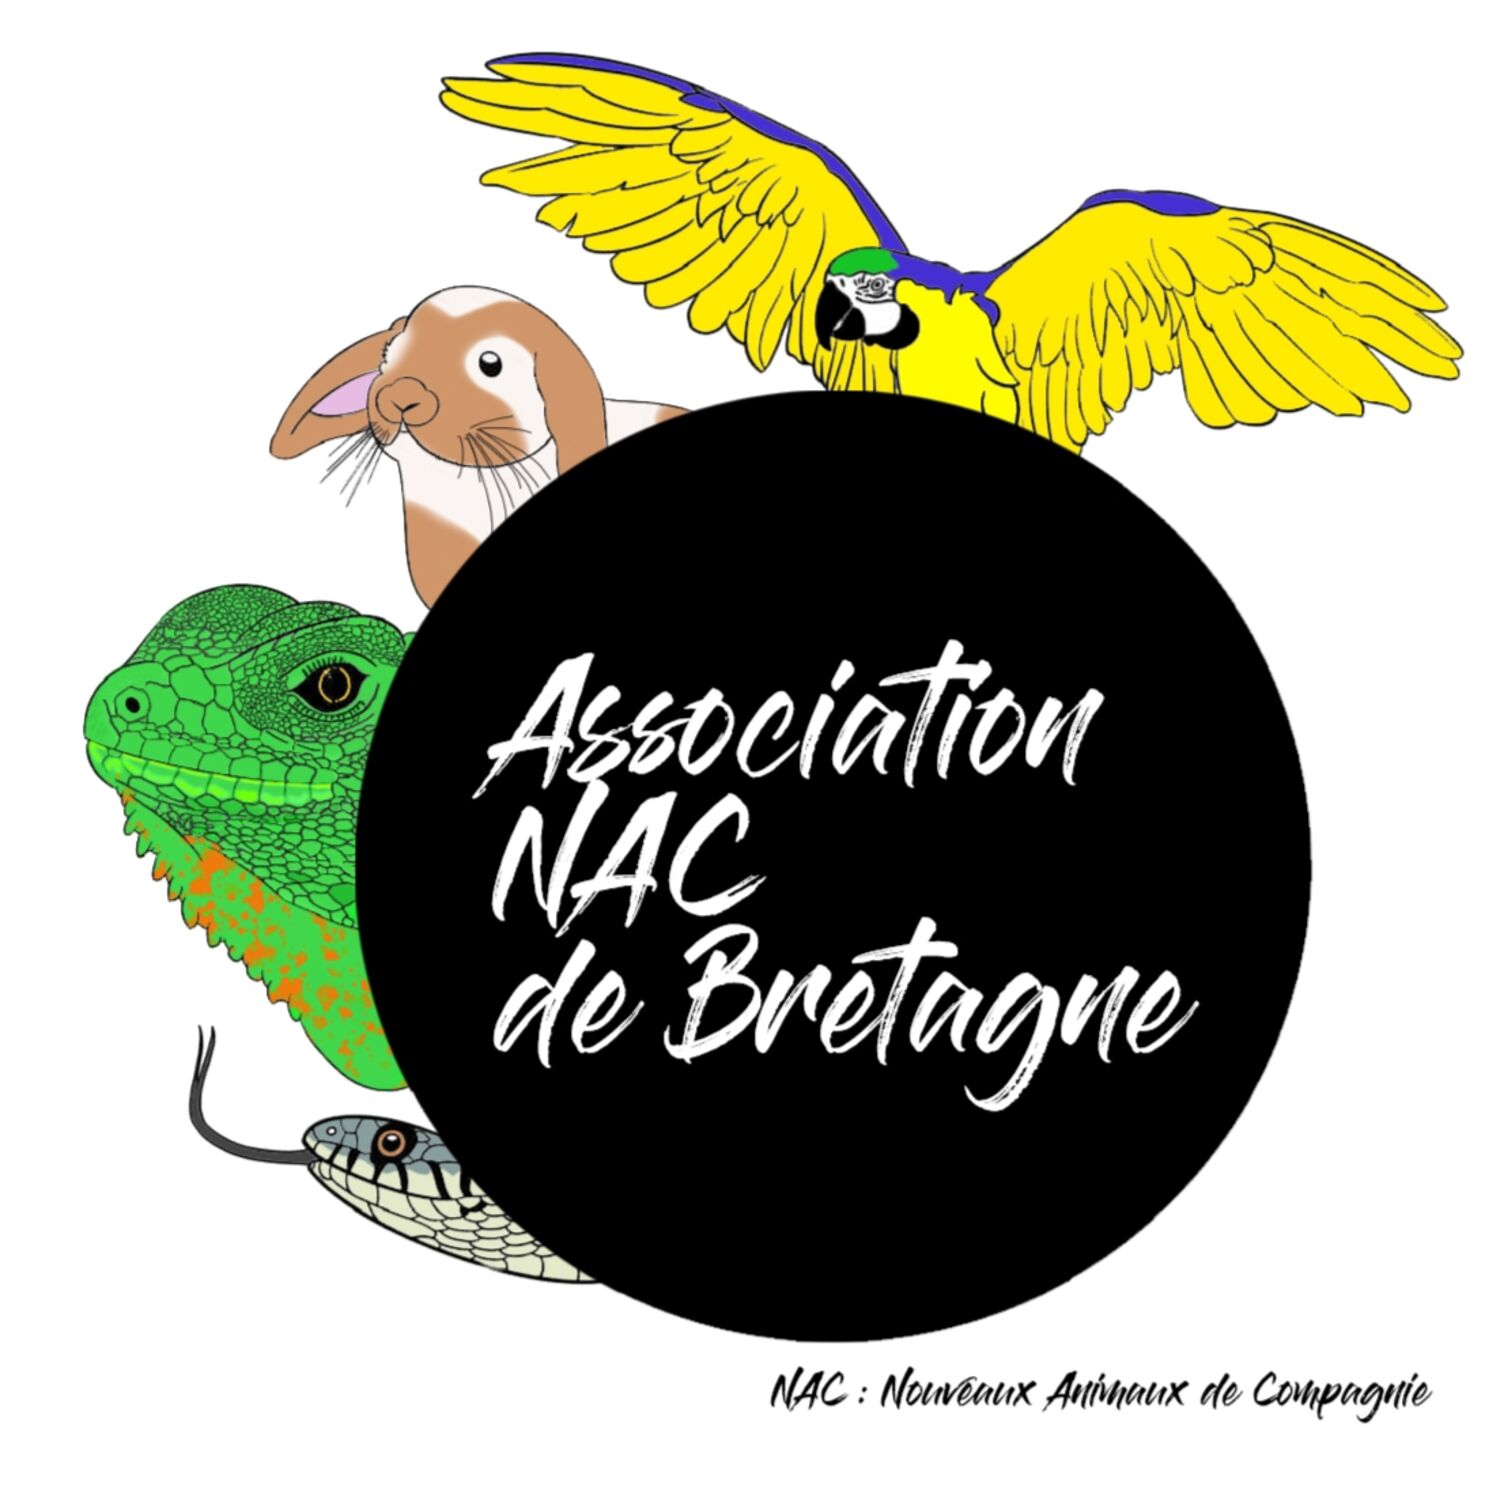 Association NAC de Bretagne